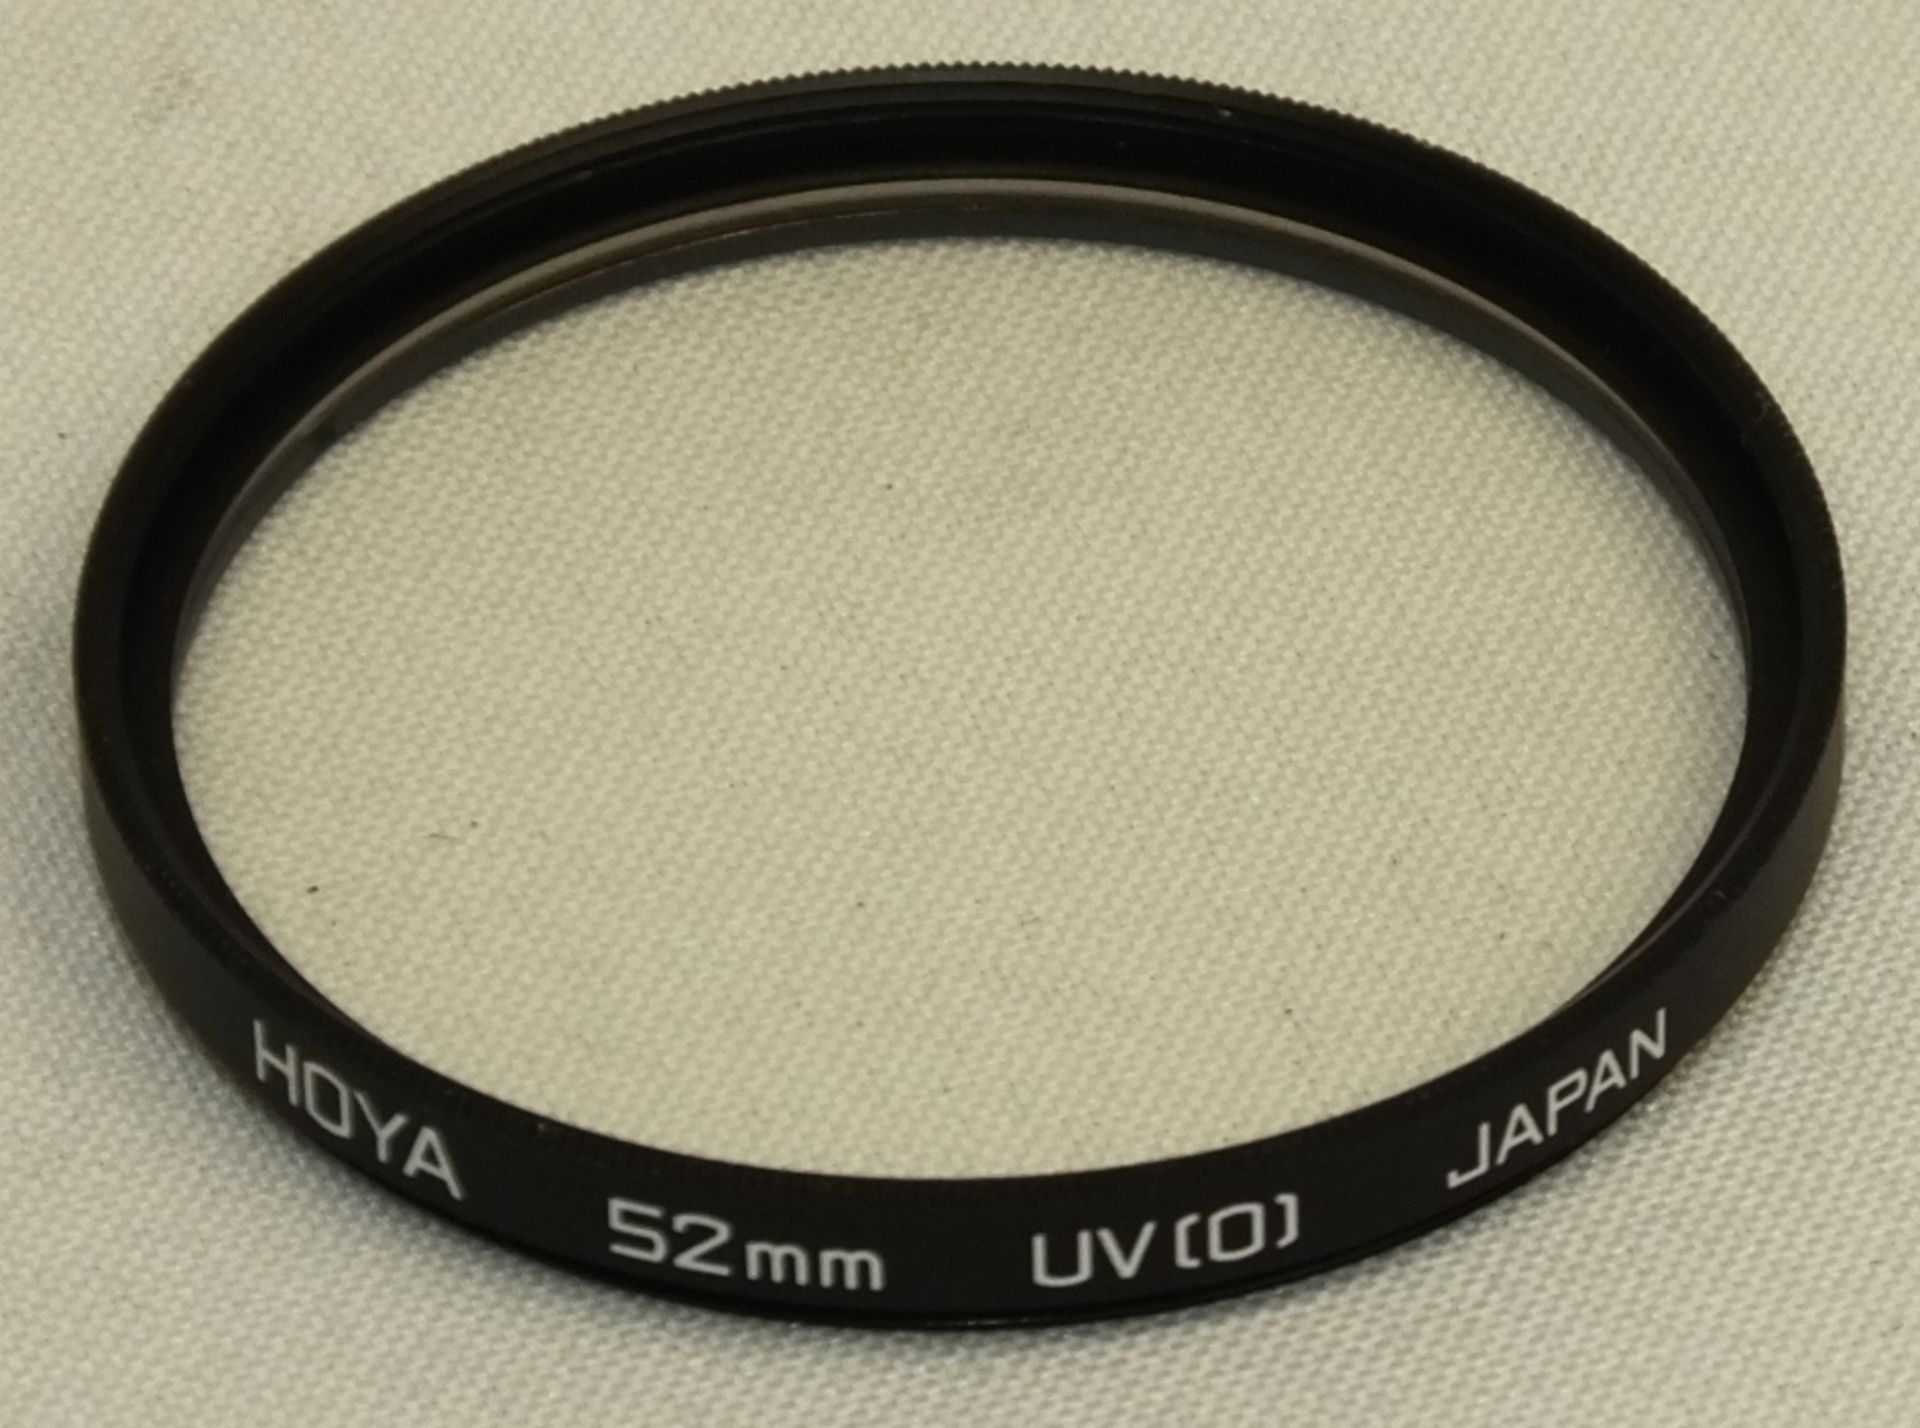 Nikon AF Nikkor 28mm 1:2.8 Lens - Serial No. - 403541 - with HOYA 52mm UV(O) Filter - Image 4 of 4